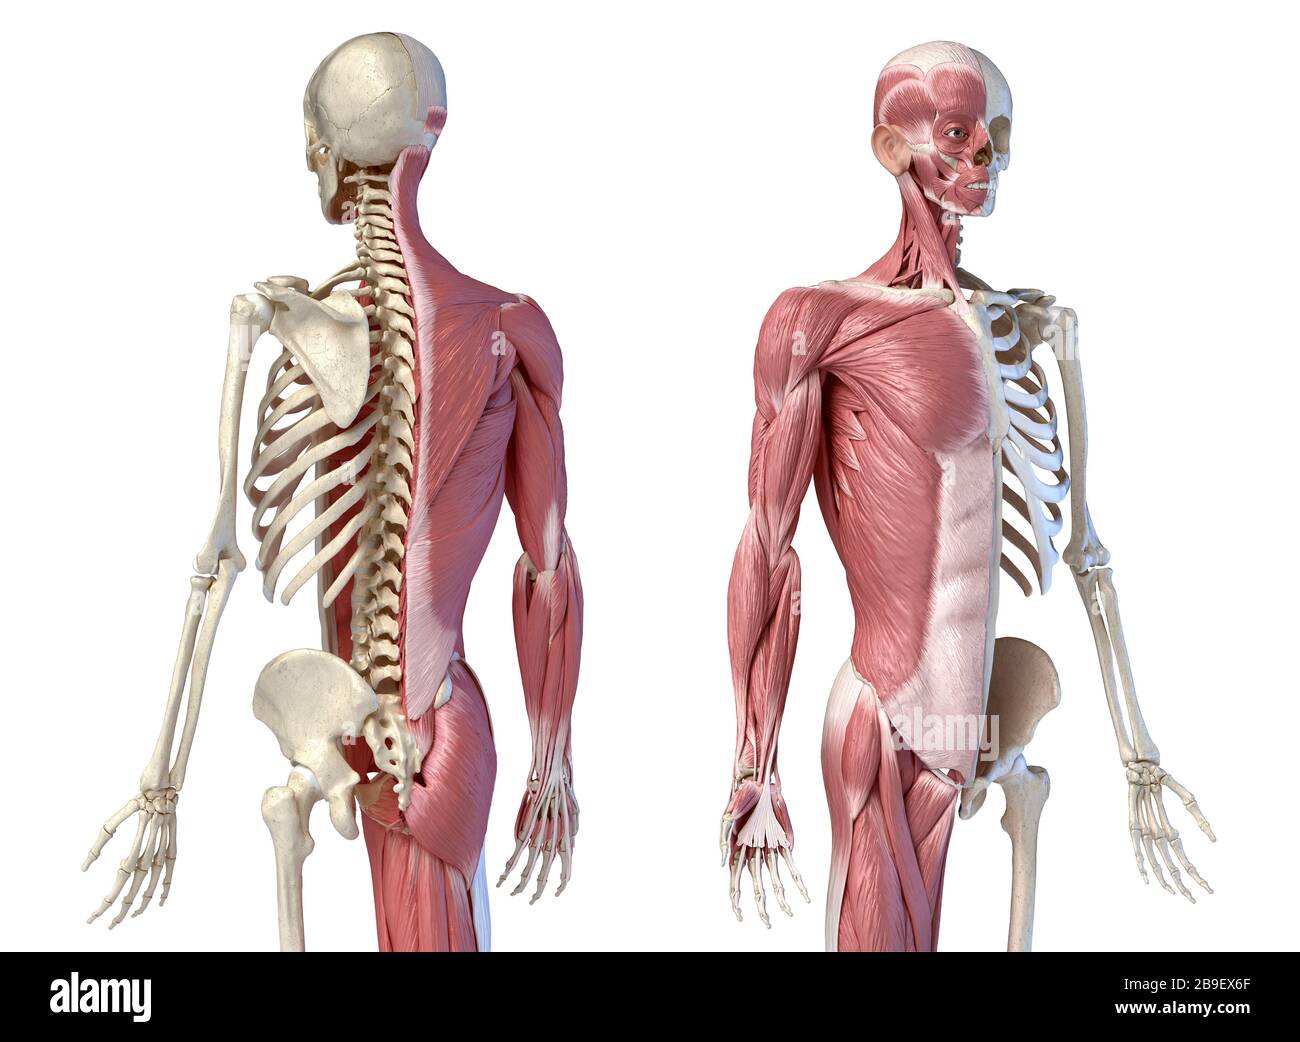 Oberkörper männliche Anatomie von Muskel- und Skelettsystemen, weißer Hintergrund. Stockfoto